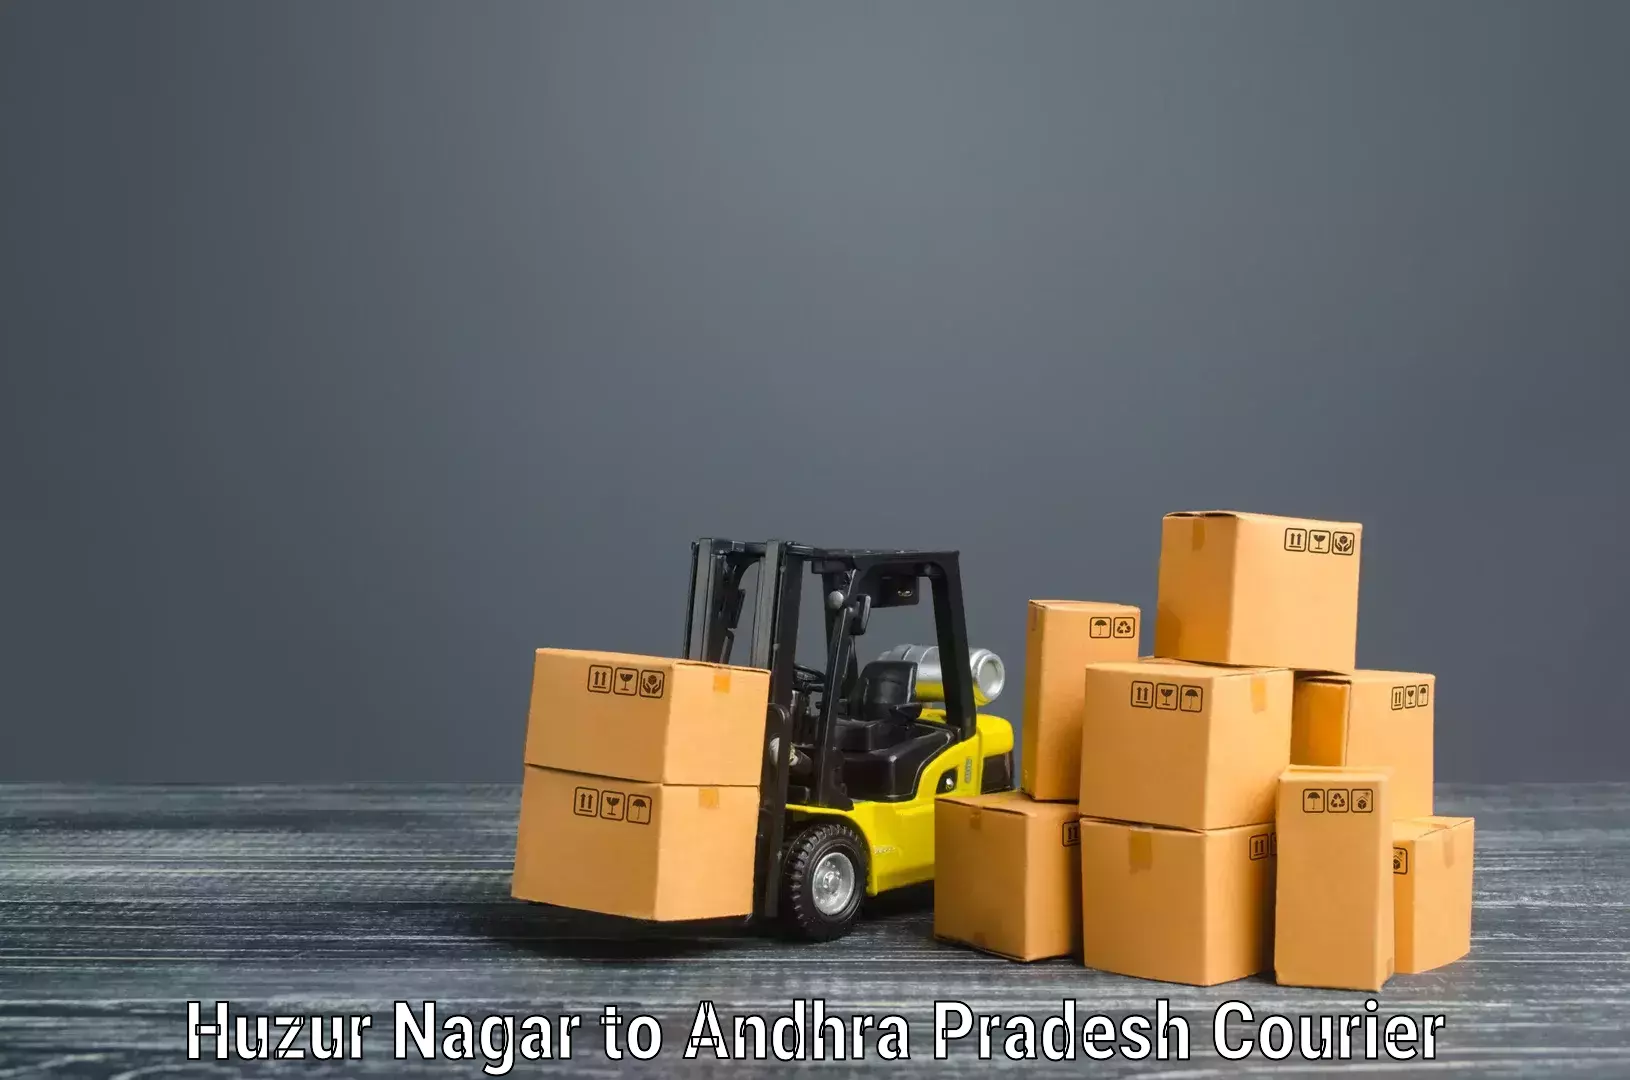 Skilled furniture transporters Huzur Nagar to Andhra Pradesh